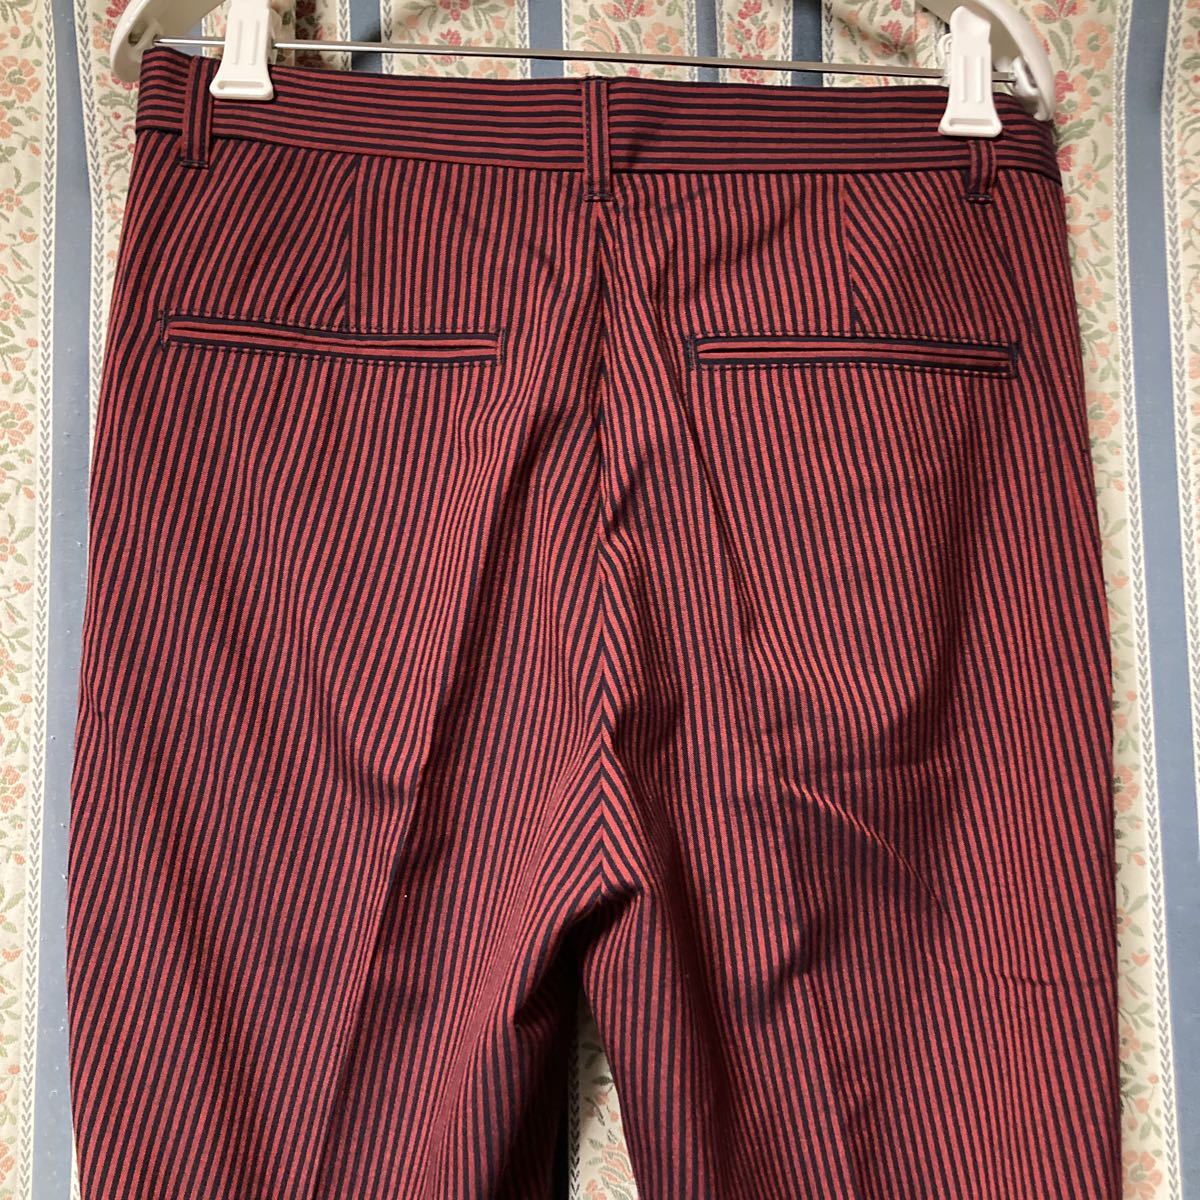  Hysteric Glamour HYSTERICS полоса слаксы брюки укороченные брюки длина конические брюки S